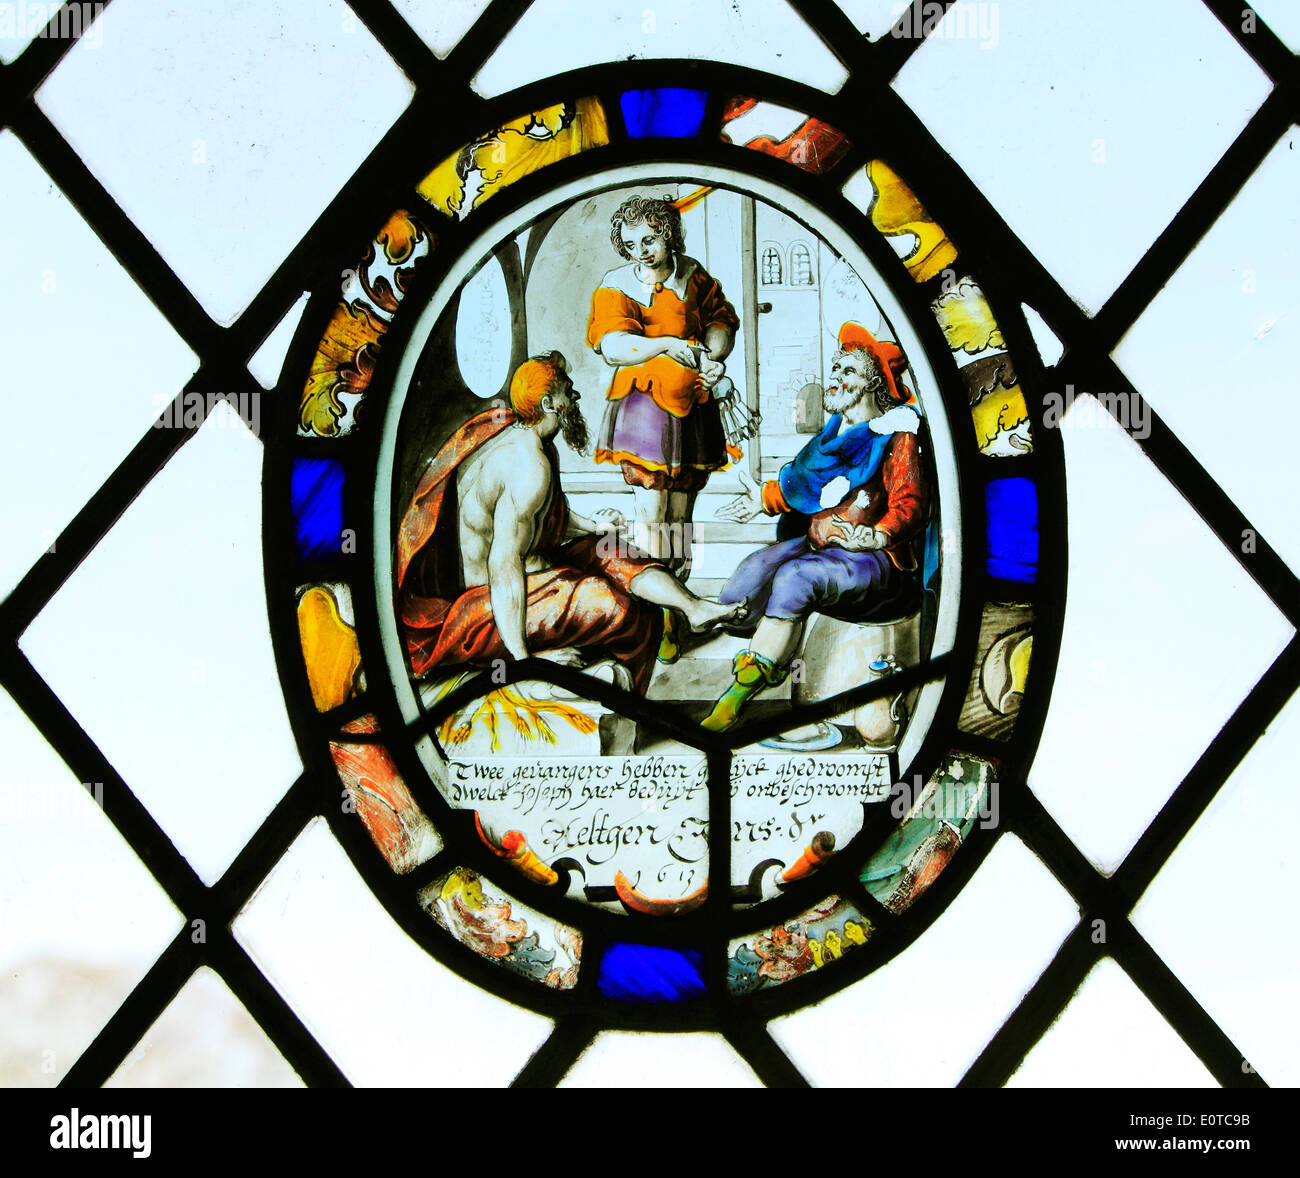 17e siècle néerlandais flamand vitrail, daté 1613, Barningham, Norfolk Angleterre Royaume-uni cocardes cocarde Banque D'Images